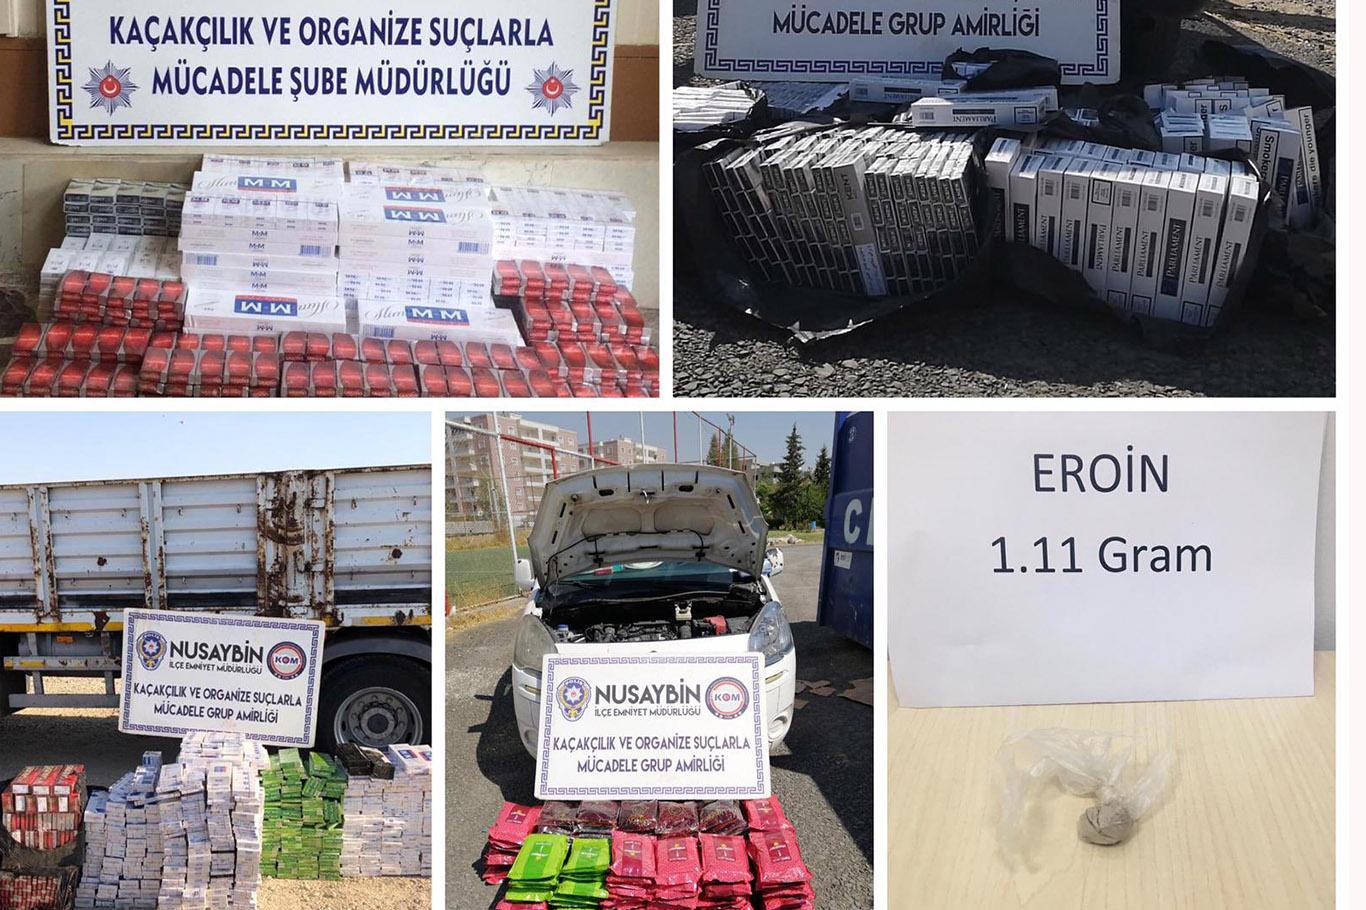 Mardin’de 12 bin paket gümrük kaçağı sigara ele geçirildi